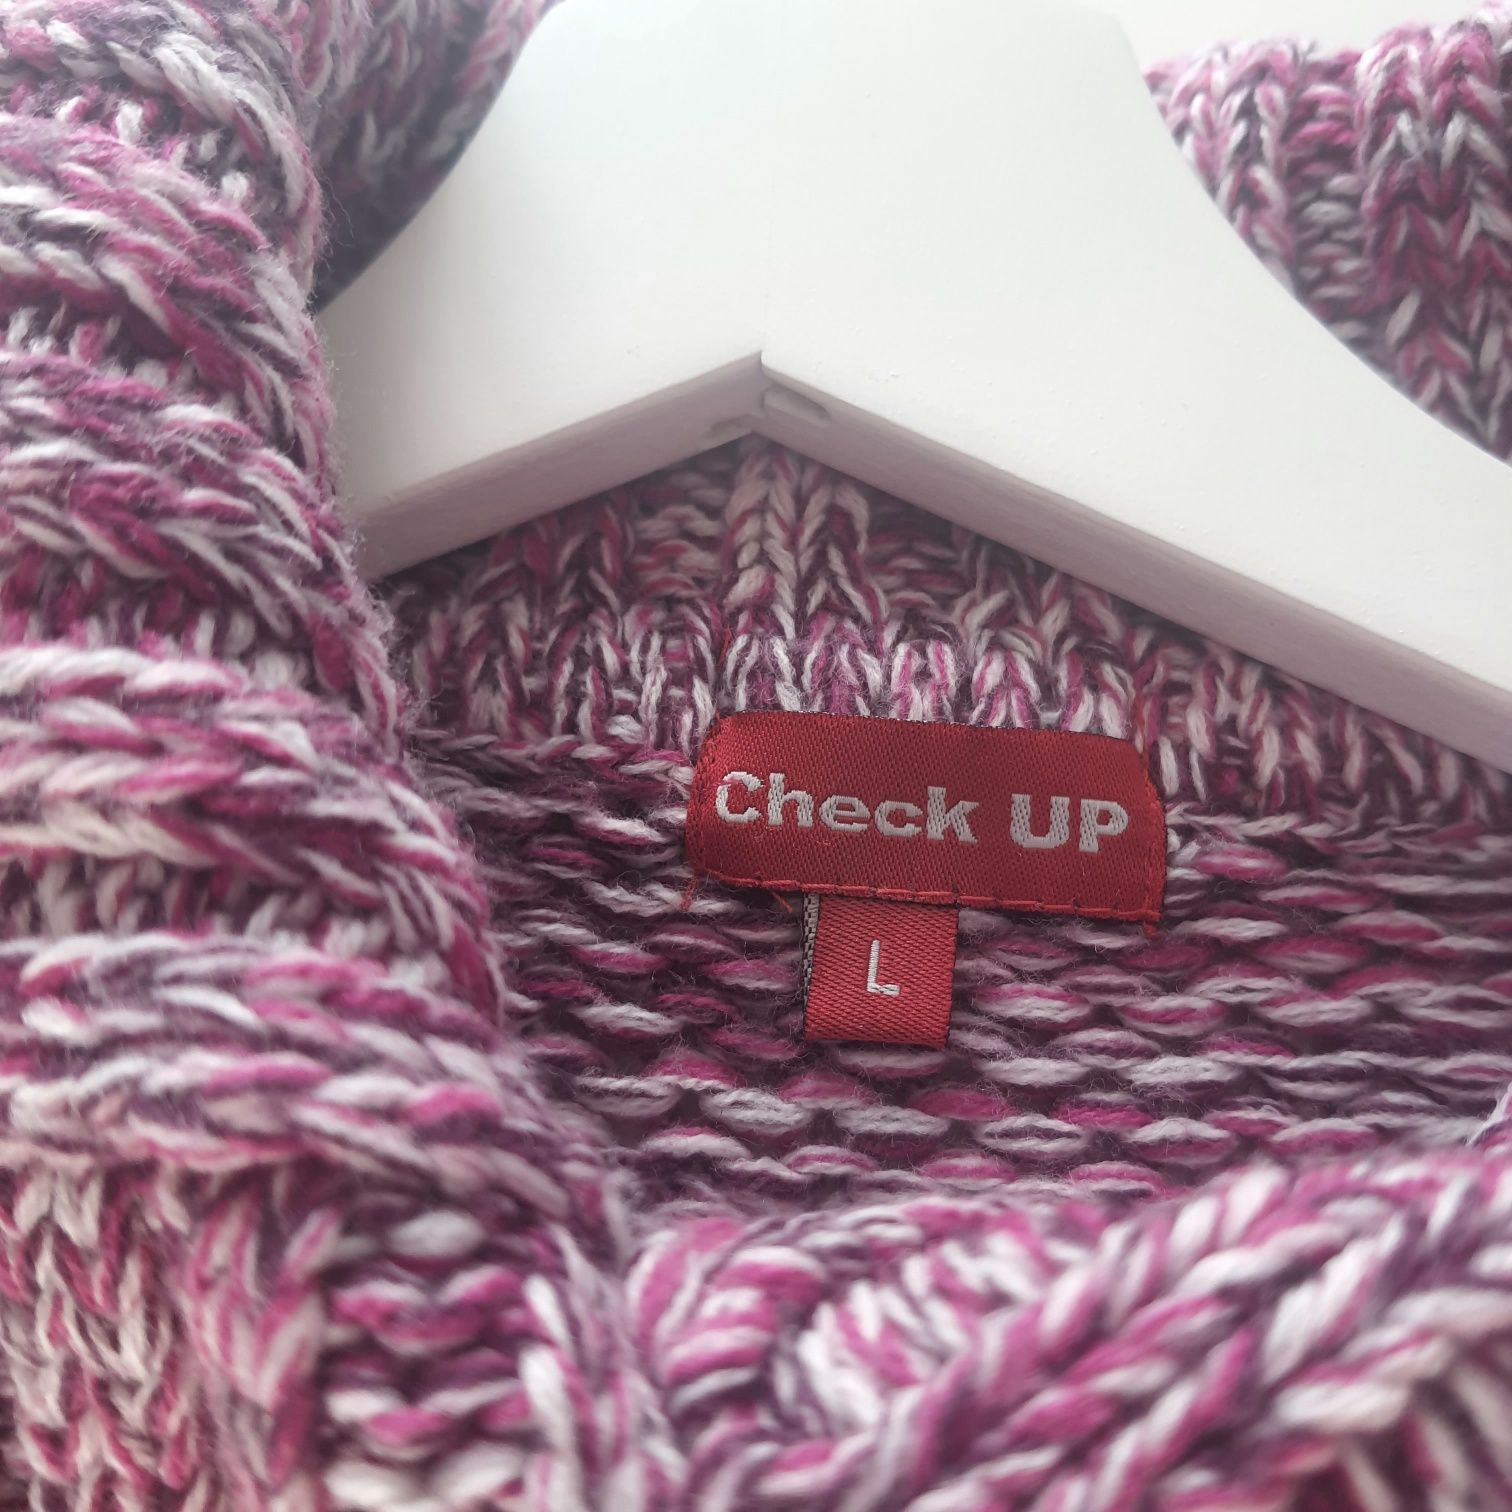 Sweter różowy melanż, Check UP, r.L